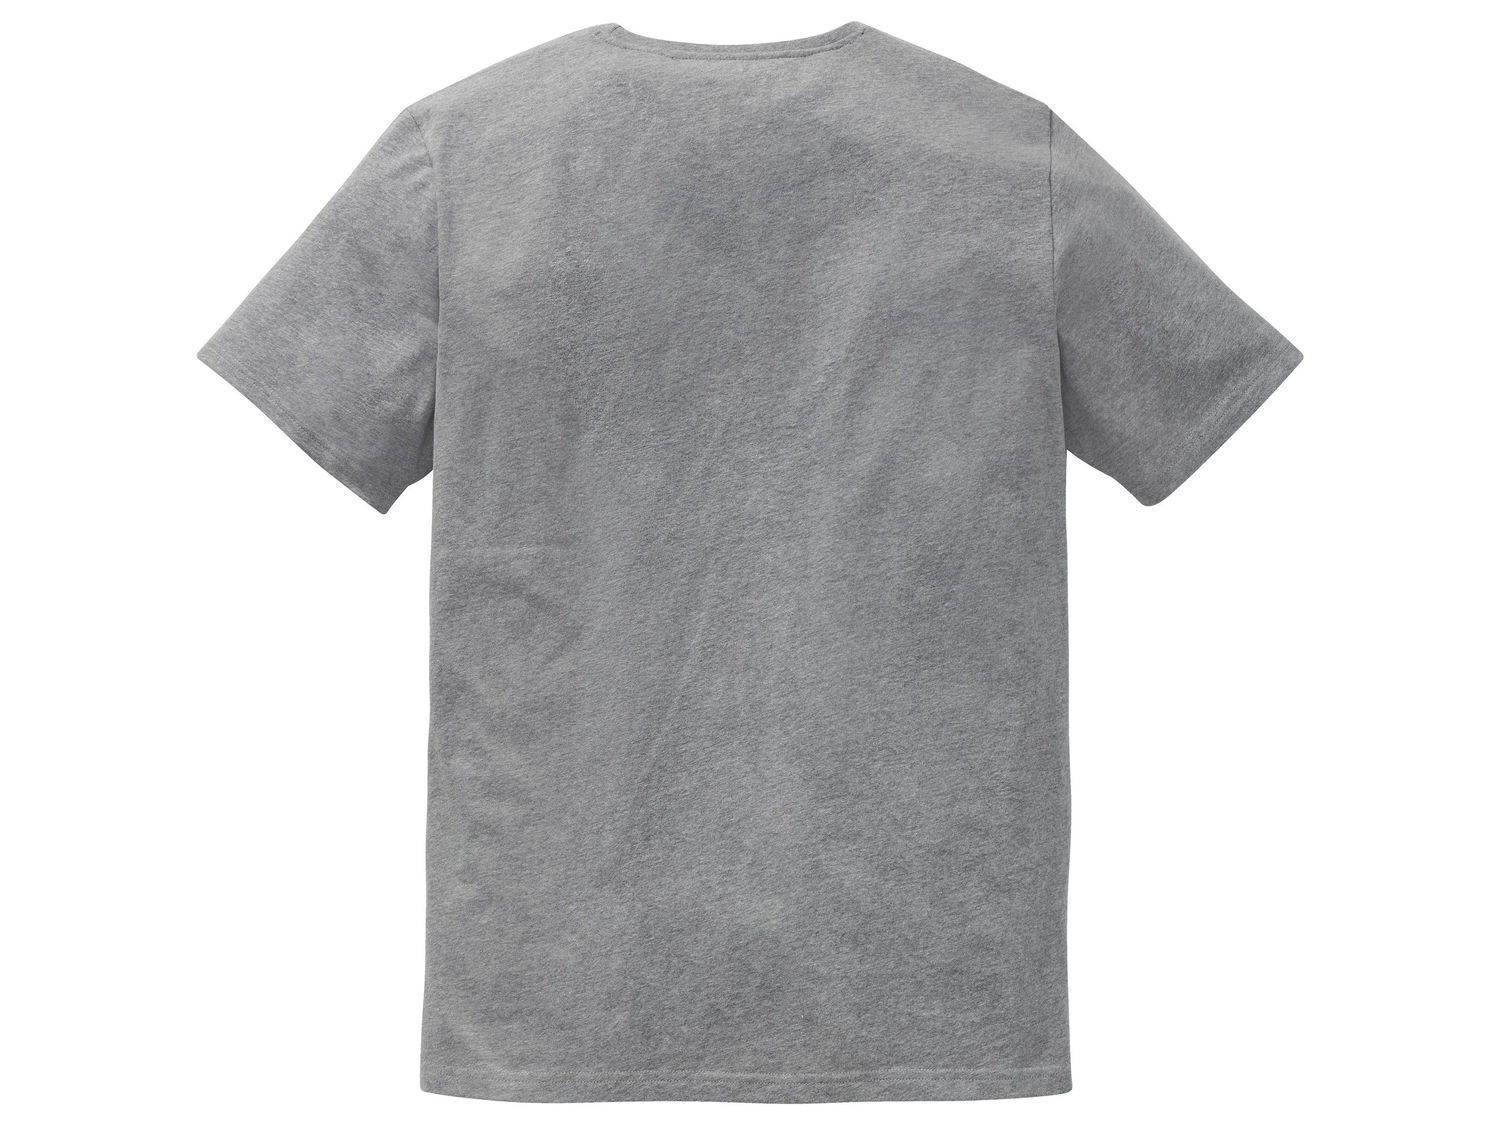 Koszulka męska Livergy, cena 15,99 PLN 
- rozmiary: M-XXL
- 90% bawełny, 10% wiskozy
- ...